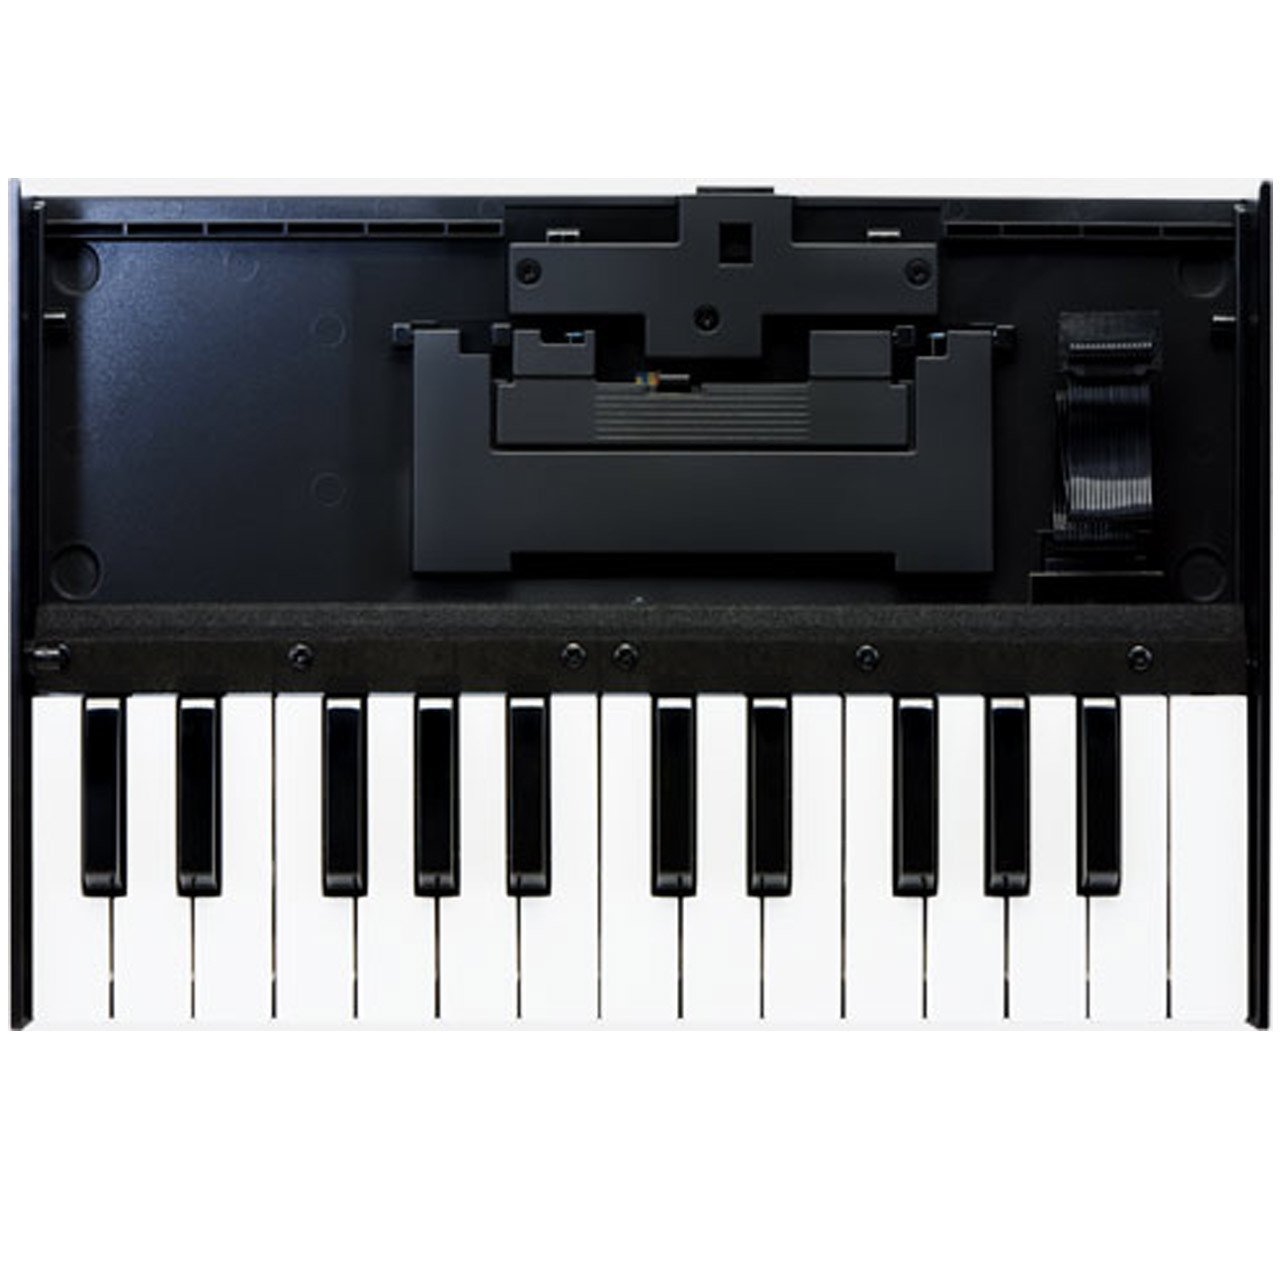 Keyboard Accessories - Roland Boutique K-25m - Keyboard Unit For Roland Boutique Series